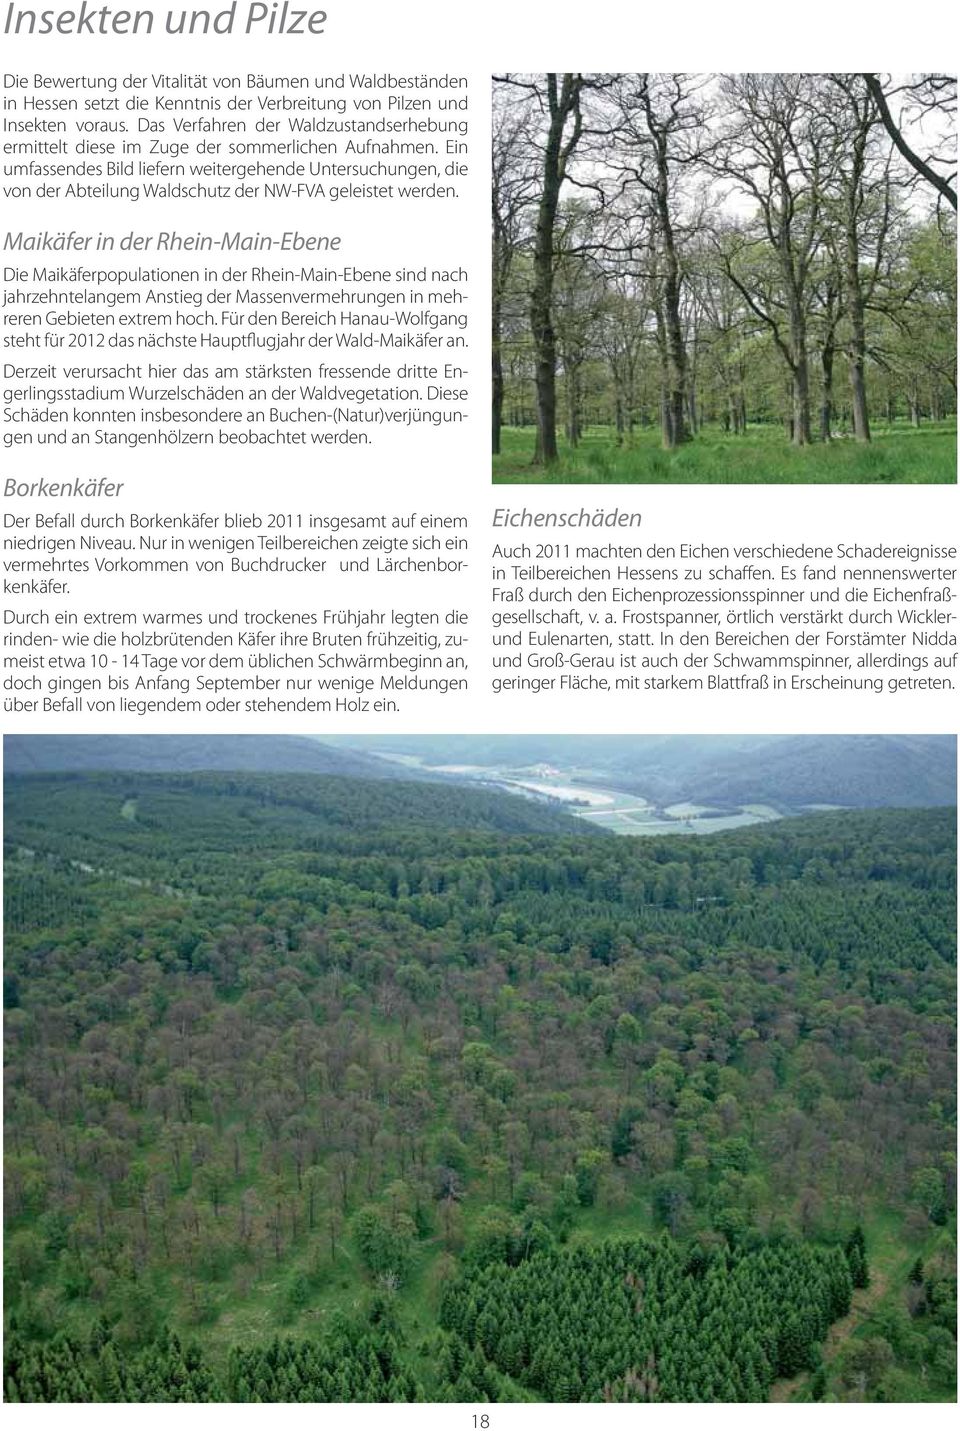 Ein umfassendes Bild liefern weitergehende Untersuchungen, die von der Abteilung Waldschutz der NW-FVA geleistet werden.